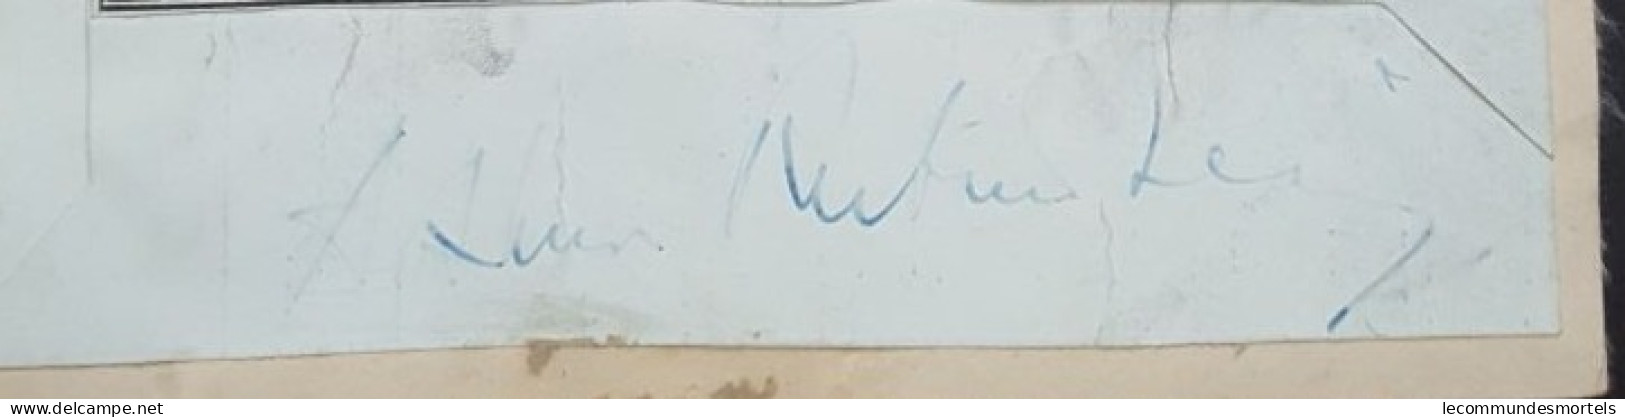 Autographe D'Arthur Rubinstein, Photo De Presse - Autografi